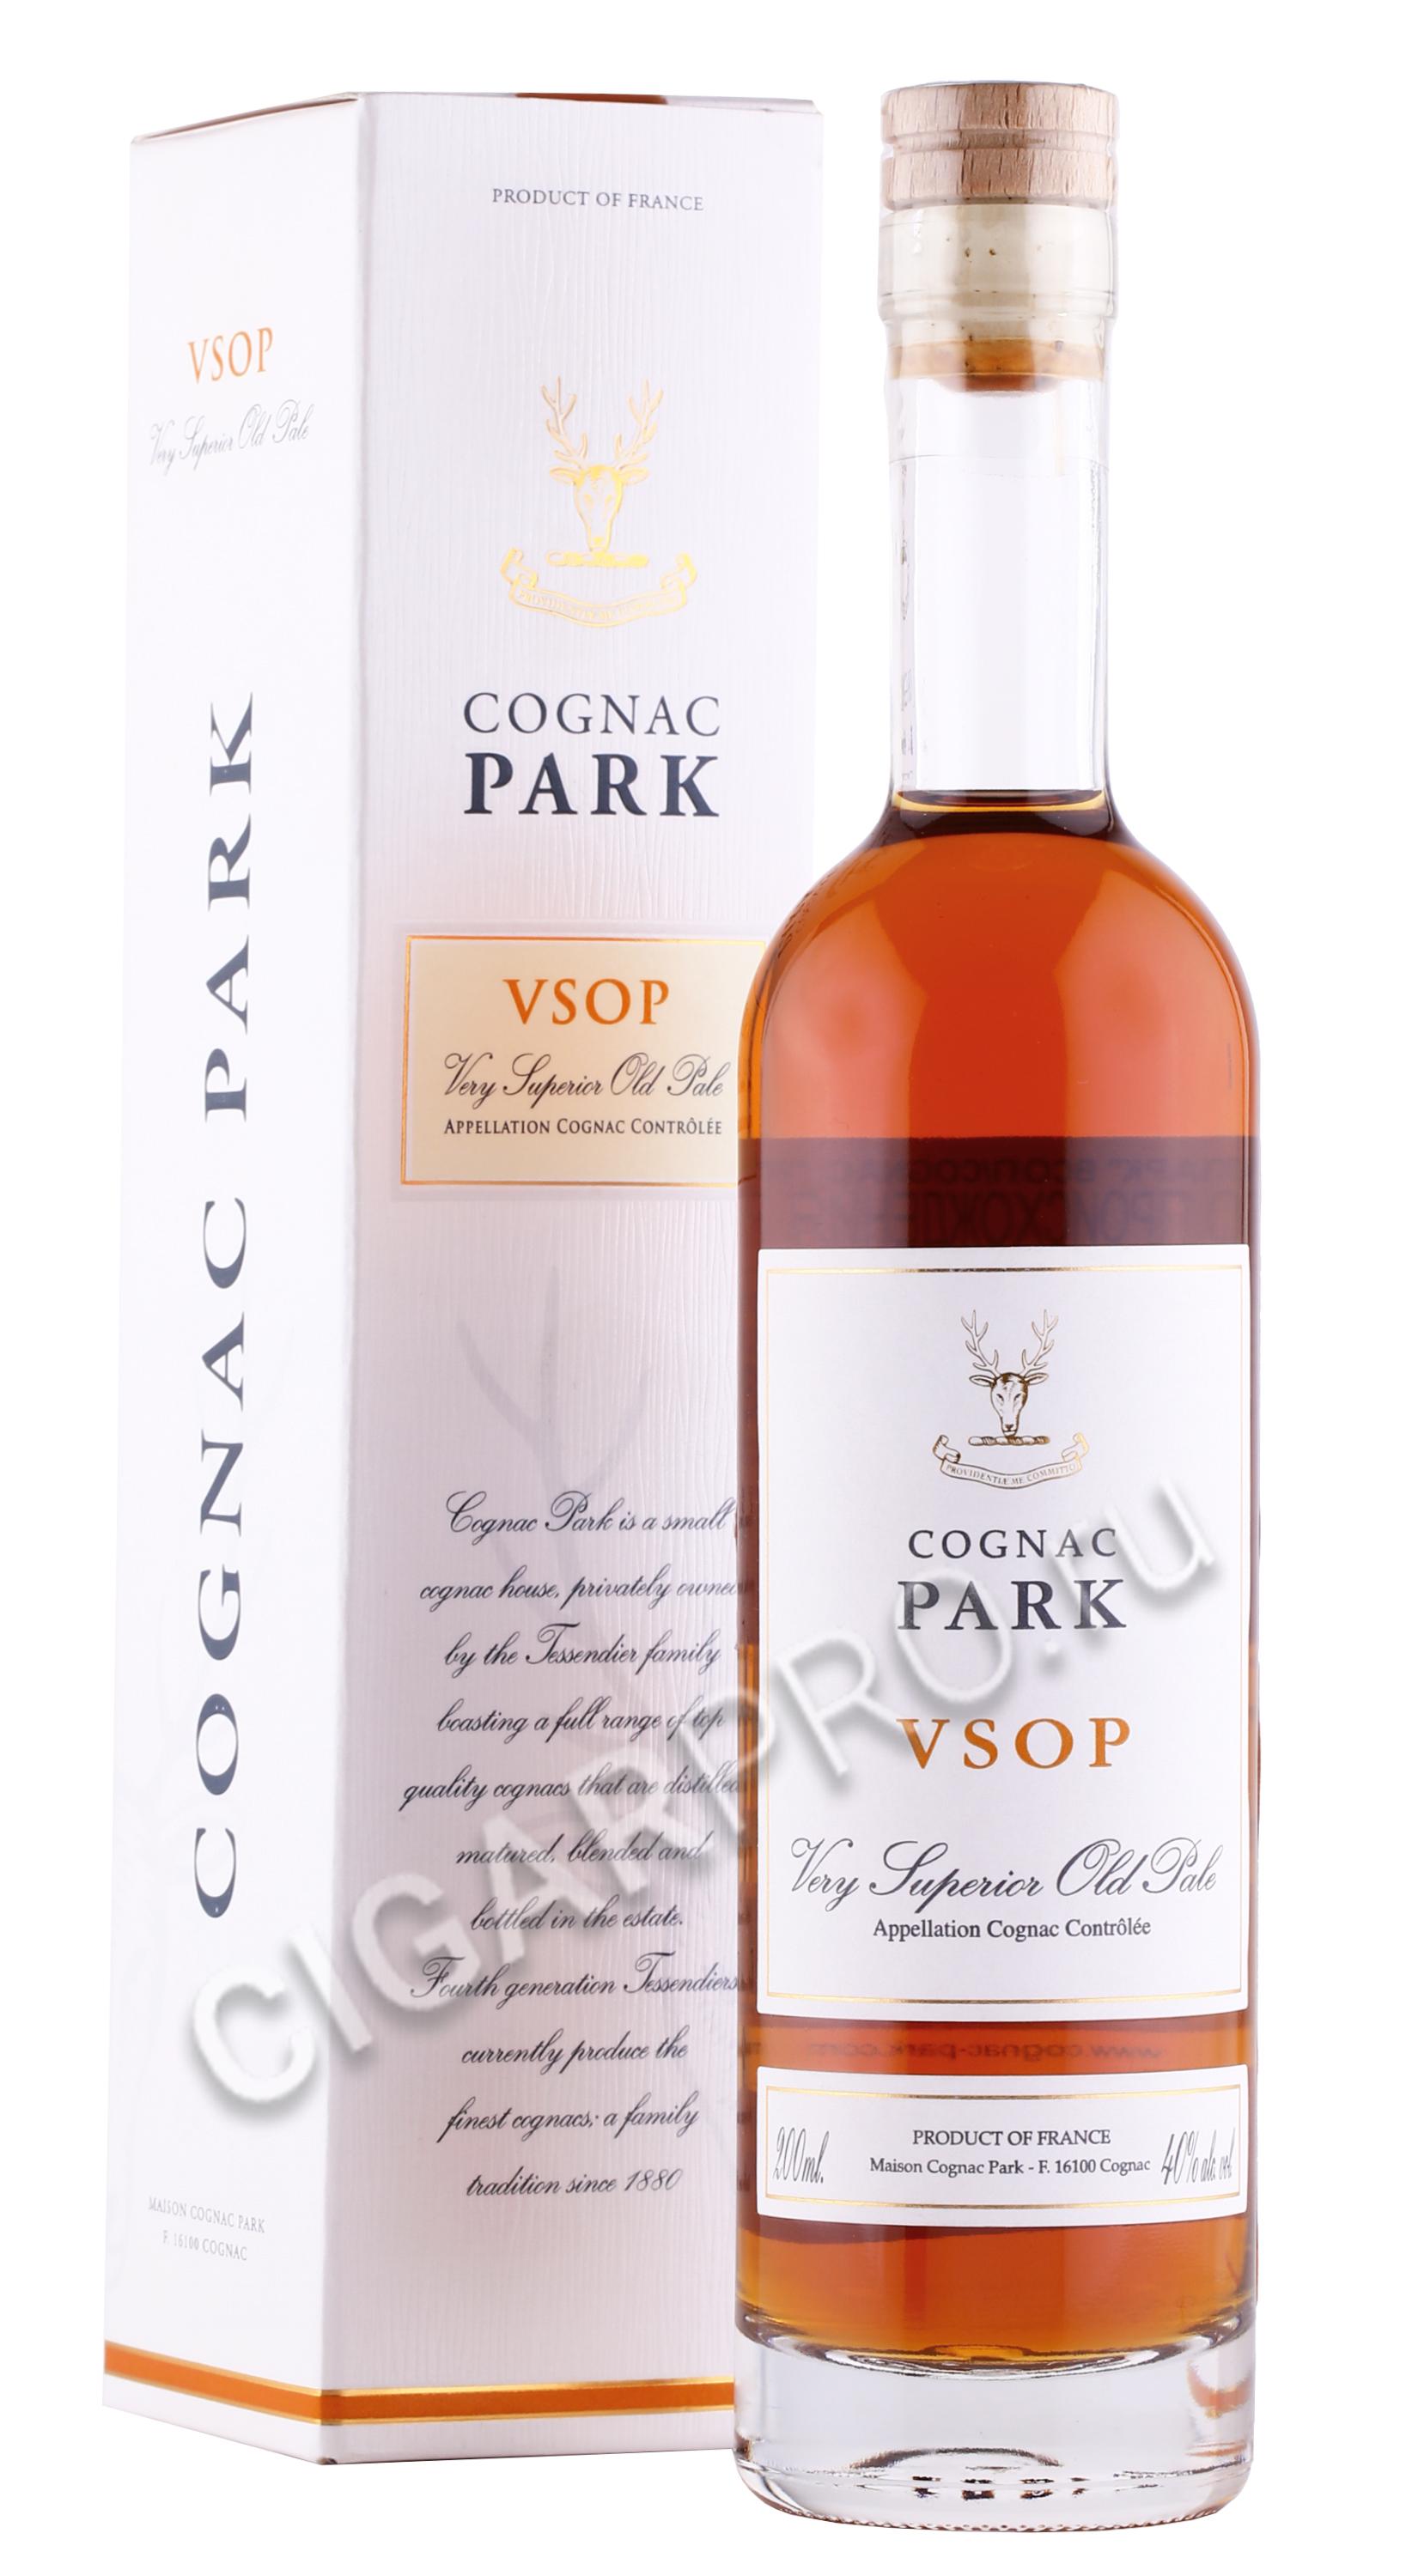 Cognac Park VSOP. Коньяк прадед. Cognac Park VSOP 0.7 цена. Коньяк прадед фото. Купить коньяк прадед